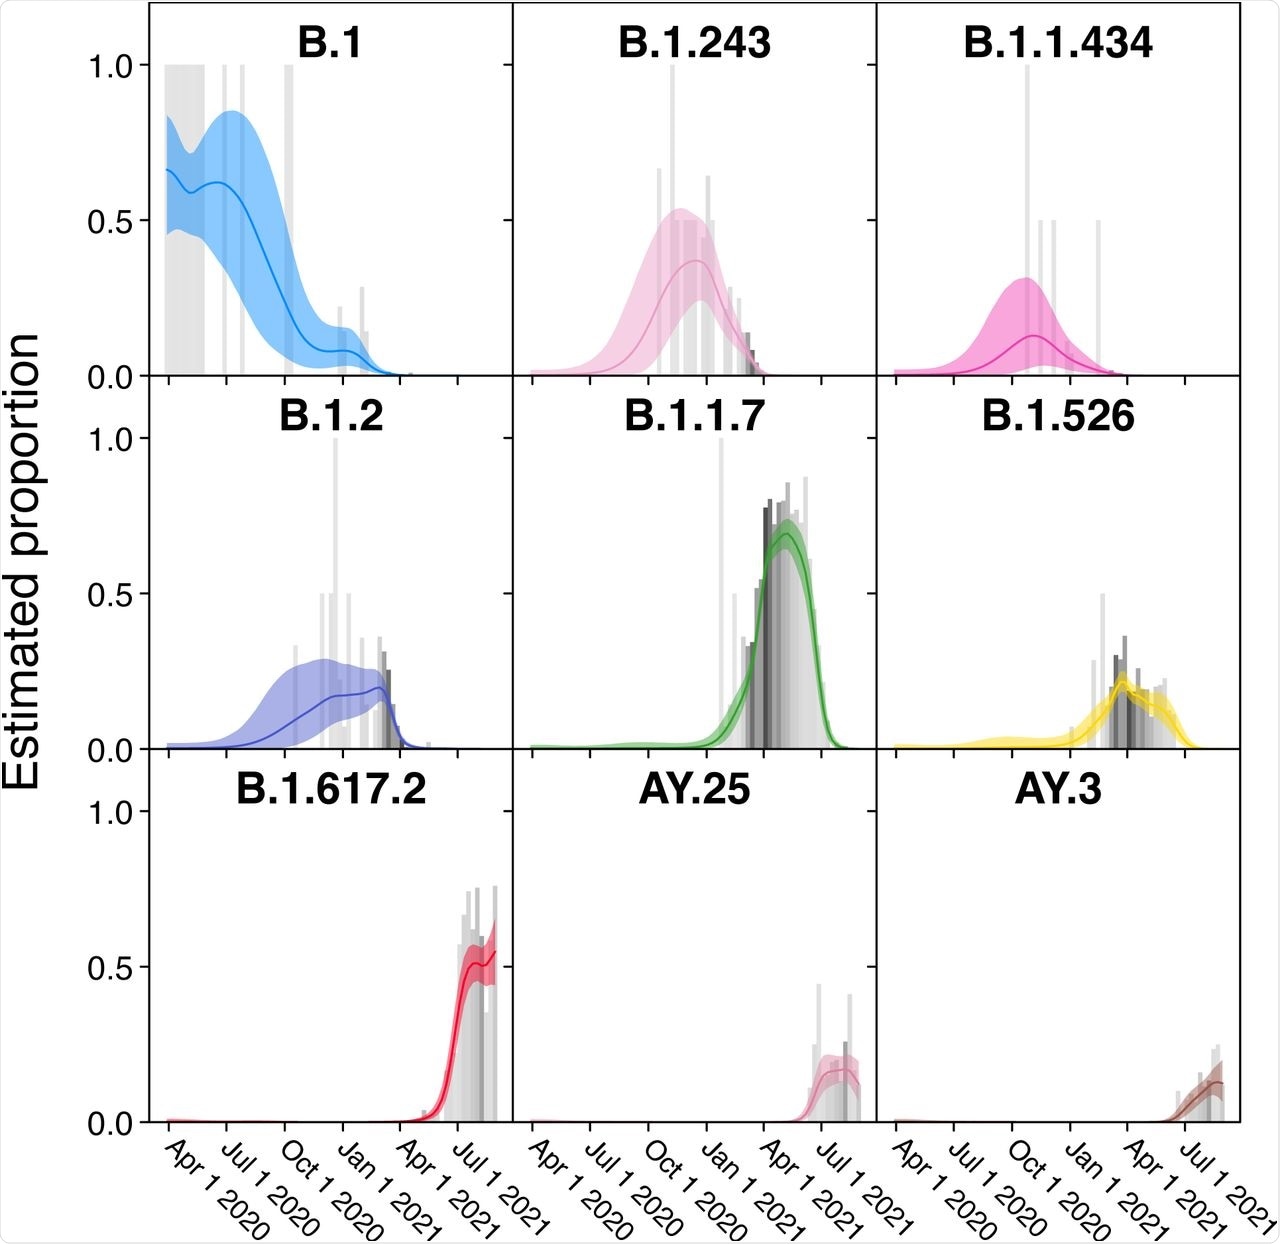 Frecuencias de las variantes individuales estimadas usando la regresión logística polinomial autorregresiva Bayesian de la media móvil. El tiempo se muestra a lo largo de x-AXIS y de las proporciones estimadas de la población de la vigilancia a lo largo de y-AXIS. Las barras negras indican las proporciones sin procesar de los datos de la cuenta sombreadas por el número de observaciones observadas en una semana dada (más oscura indicando más muestras) mientras que las líneas coloreadas indican la proporción estimada por el modelo Bayesian. Los envolventes de color claro alrededor de cada línea muestran a 95% los intervalos creíbles para la proporción. Solamente los linajes que logran una proporción estimada del >10% de cualquier semana dada se muestran.